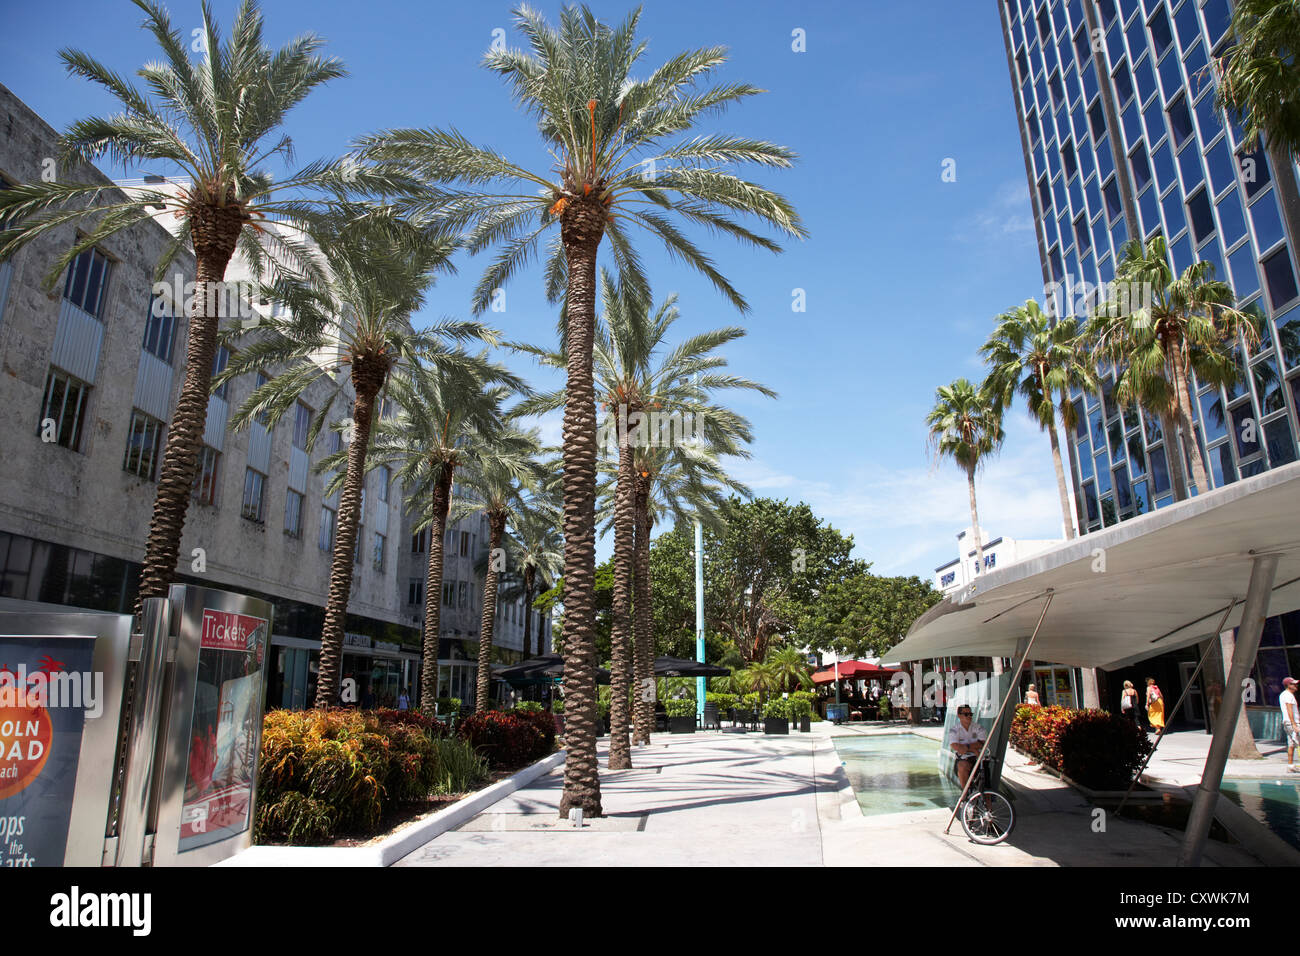 Lincoln Road street Einkaufsviertel South Beach Miami south beach Florida Usa Stockfoto